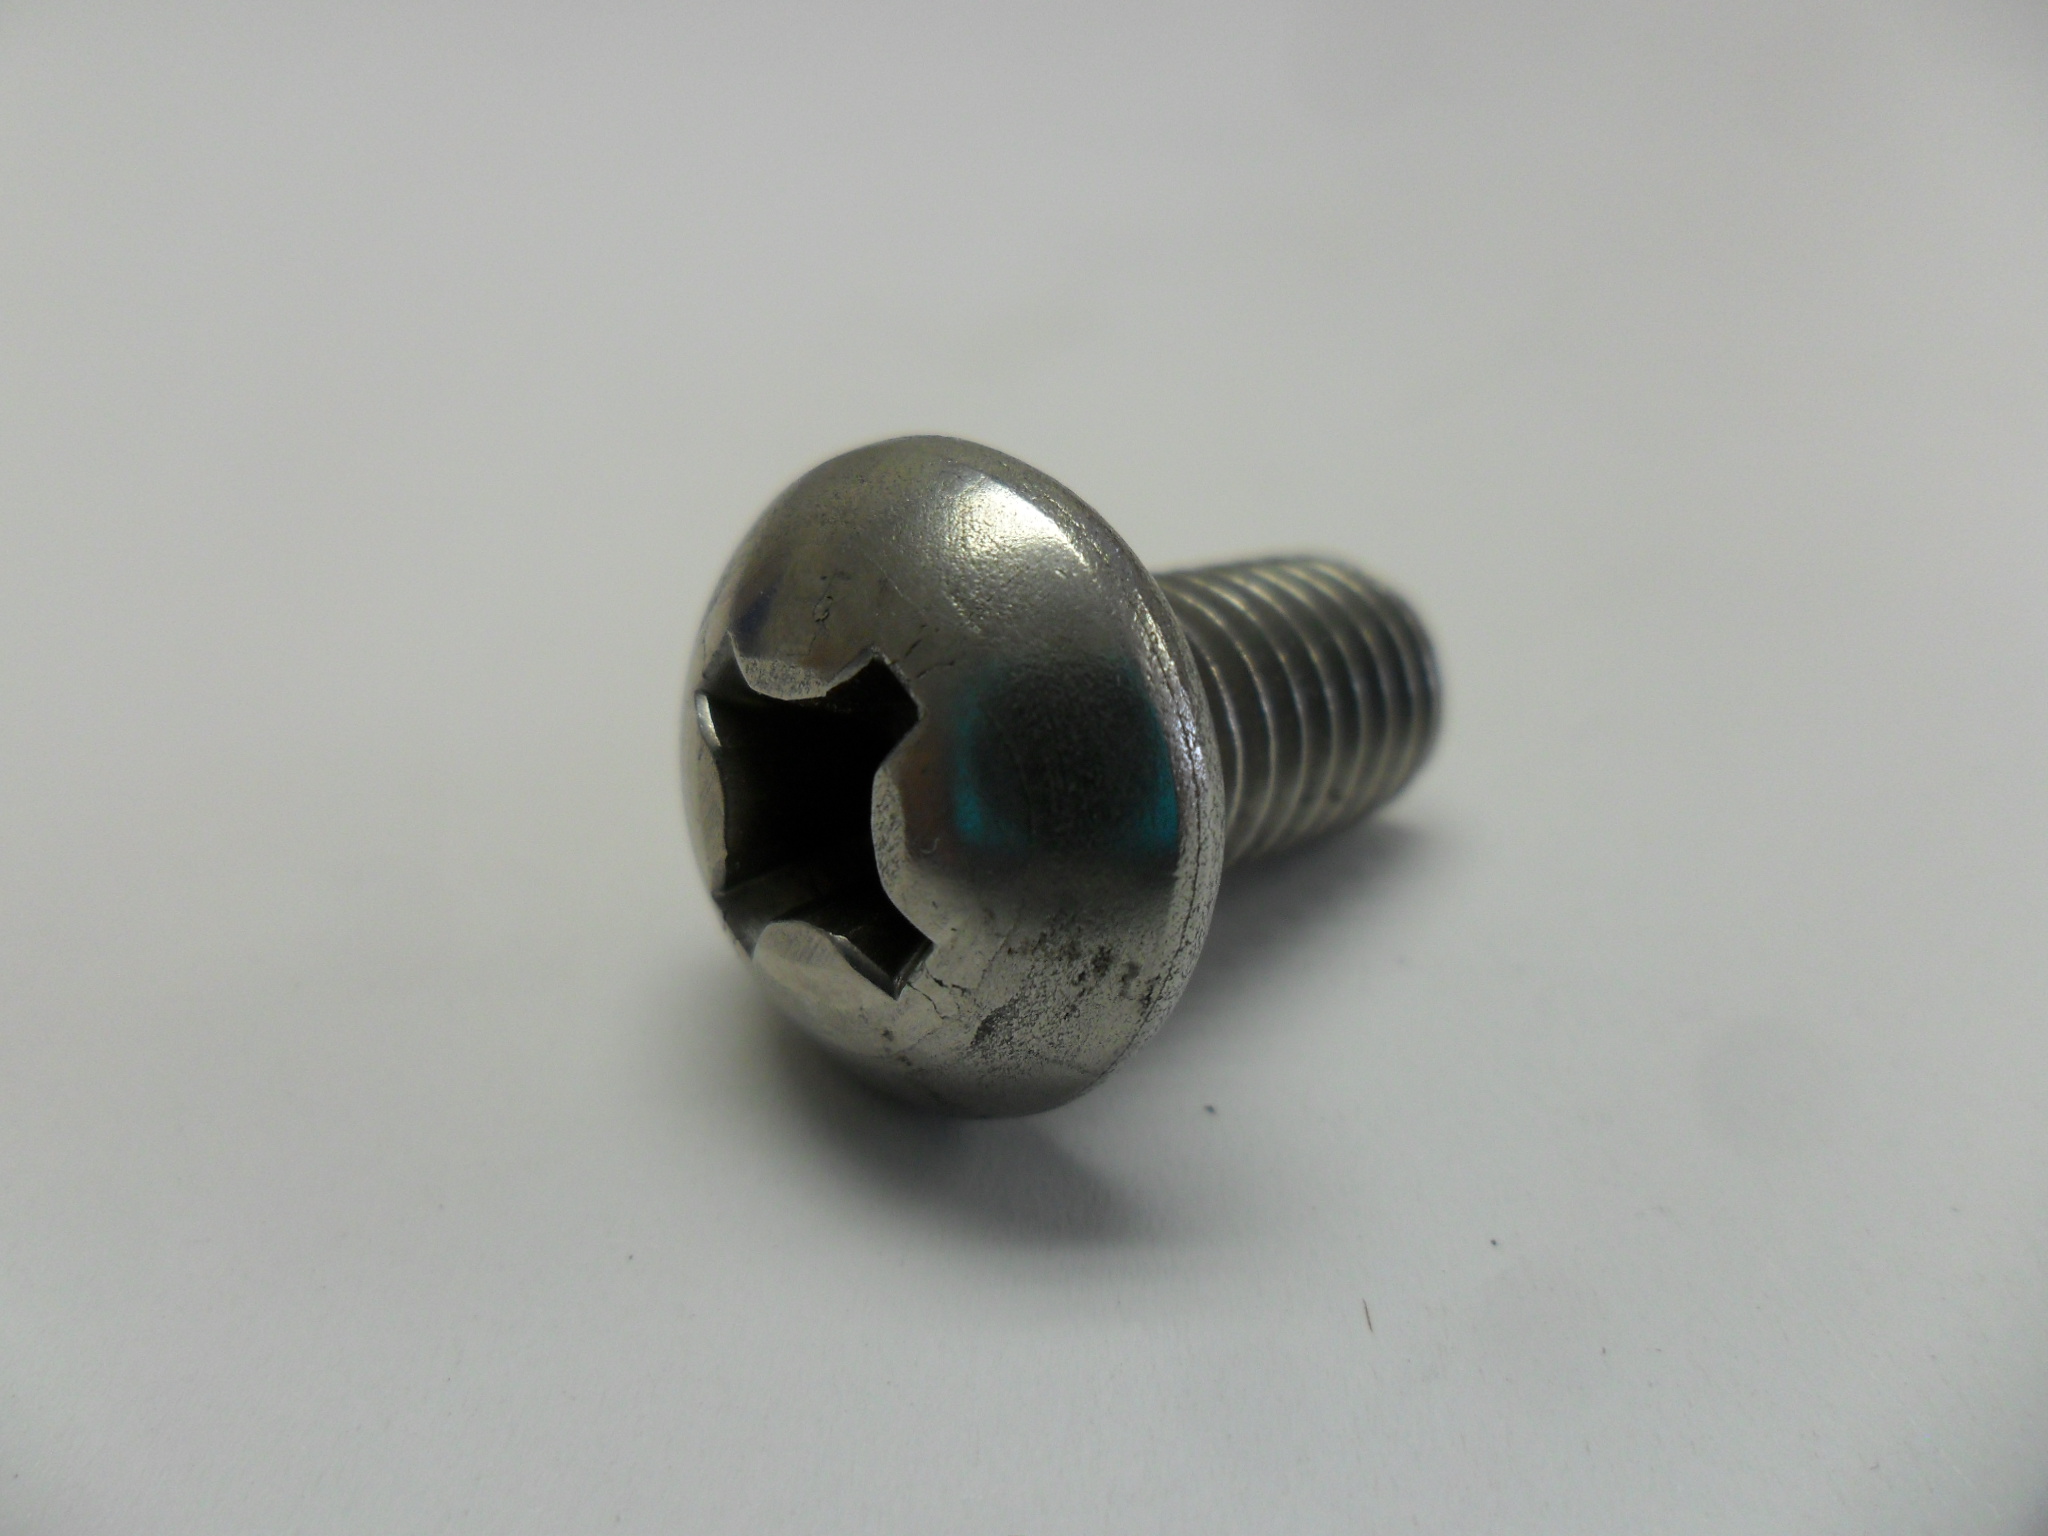 Tr308w titanium round head screws phillips 3x8 mm not plastic x10 